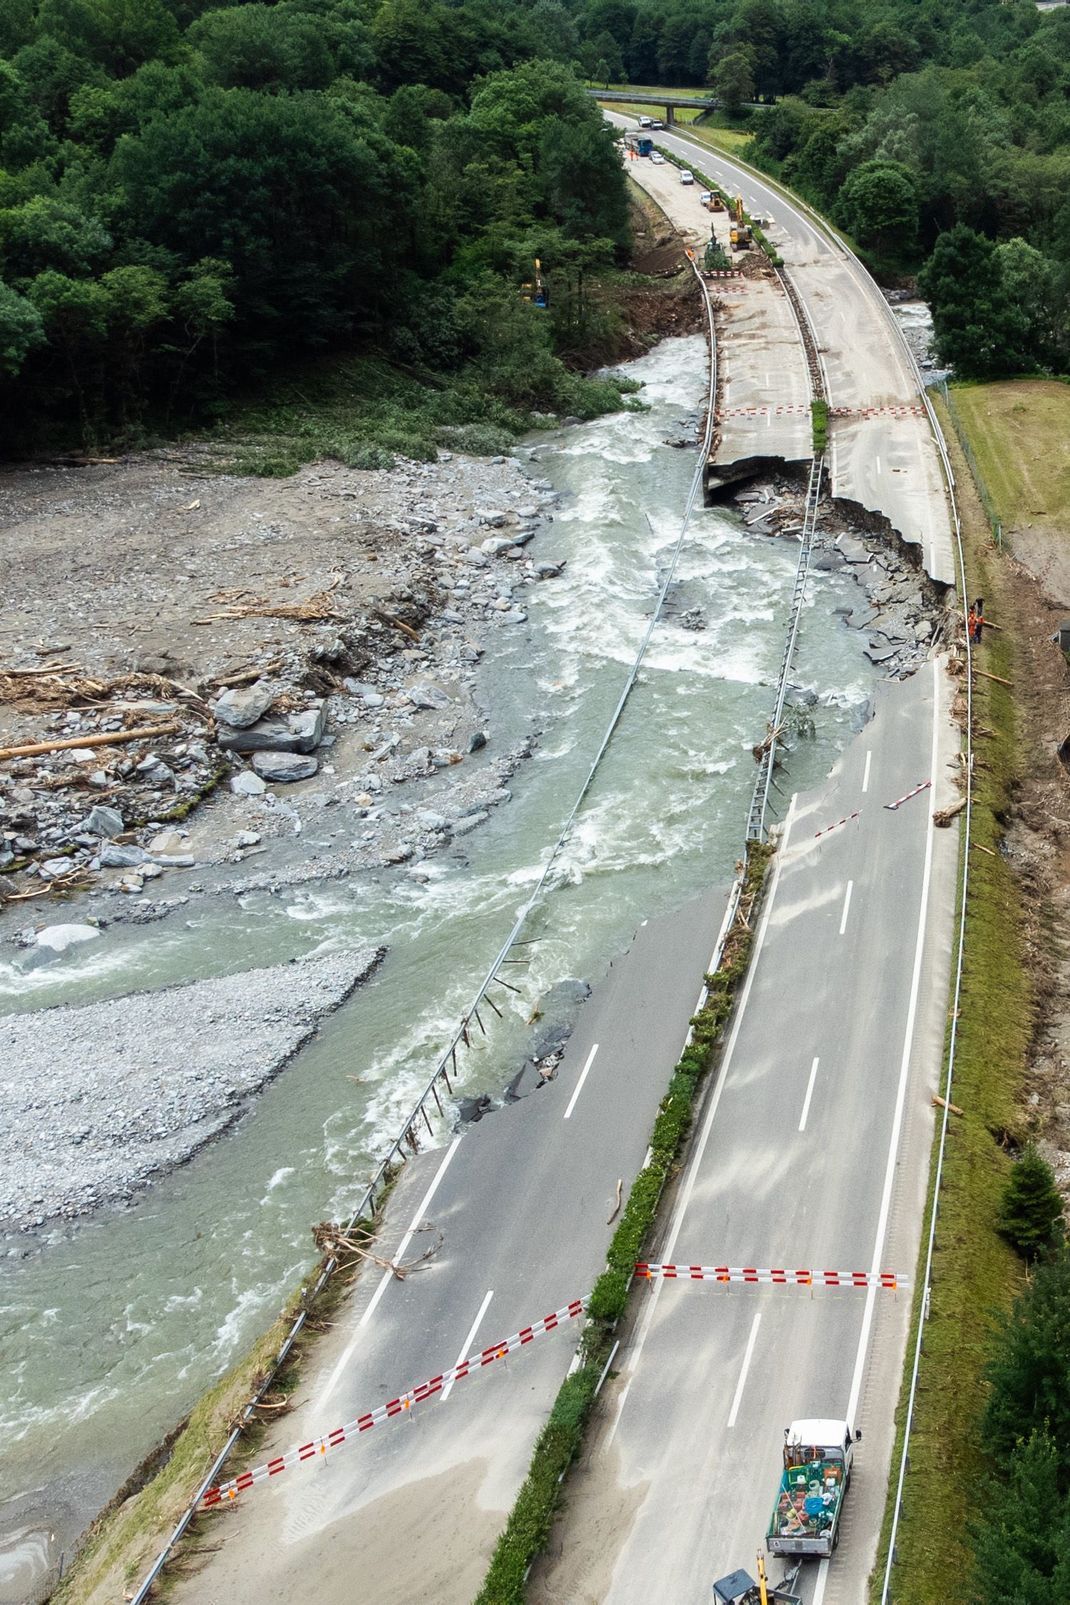 Ein verheerendes Bild zeigte sich nach dem starken Unwetter am Freitag (21. Juni) auf der A13 in der Schweiz (oberhalb von Lostallo). Ein Teilabschnitt der Autobahn wurde unterspült und weggerissen.